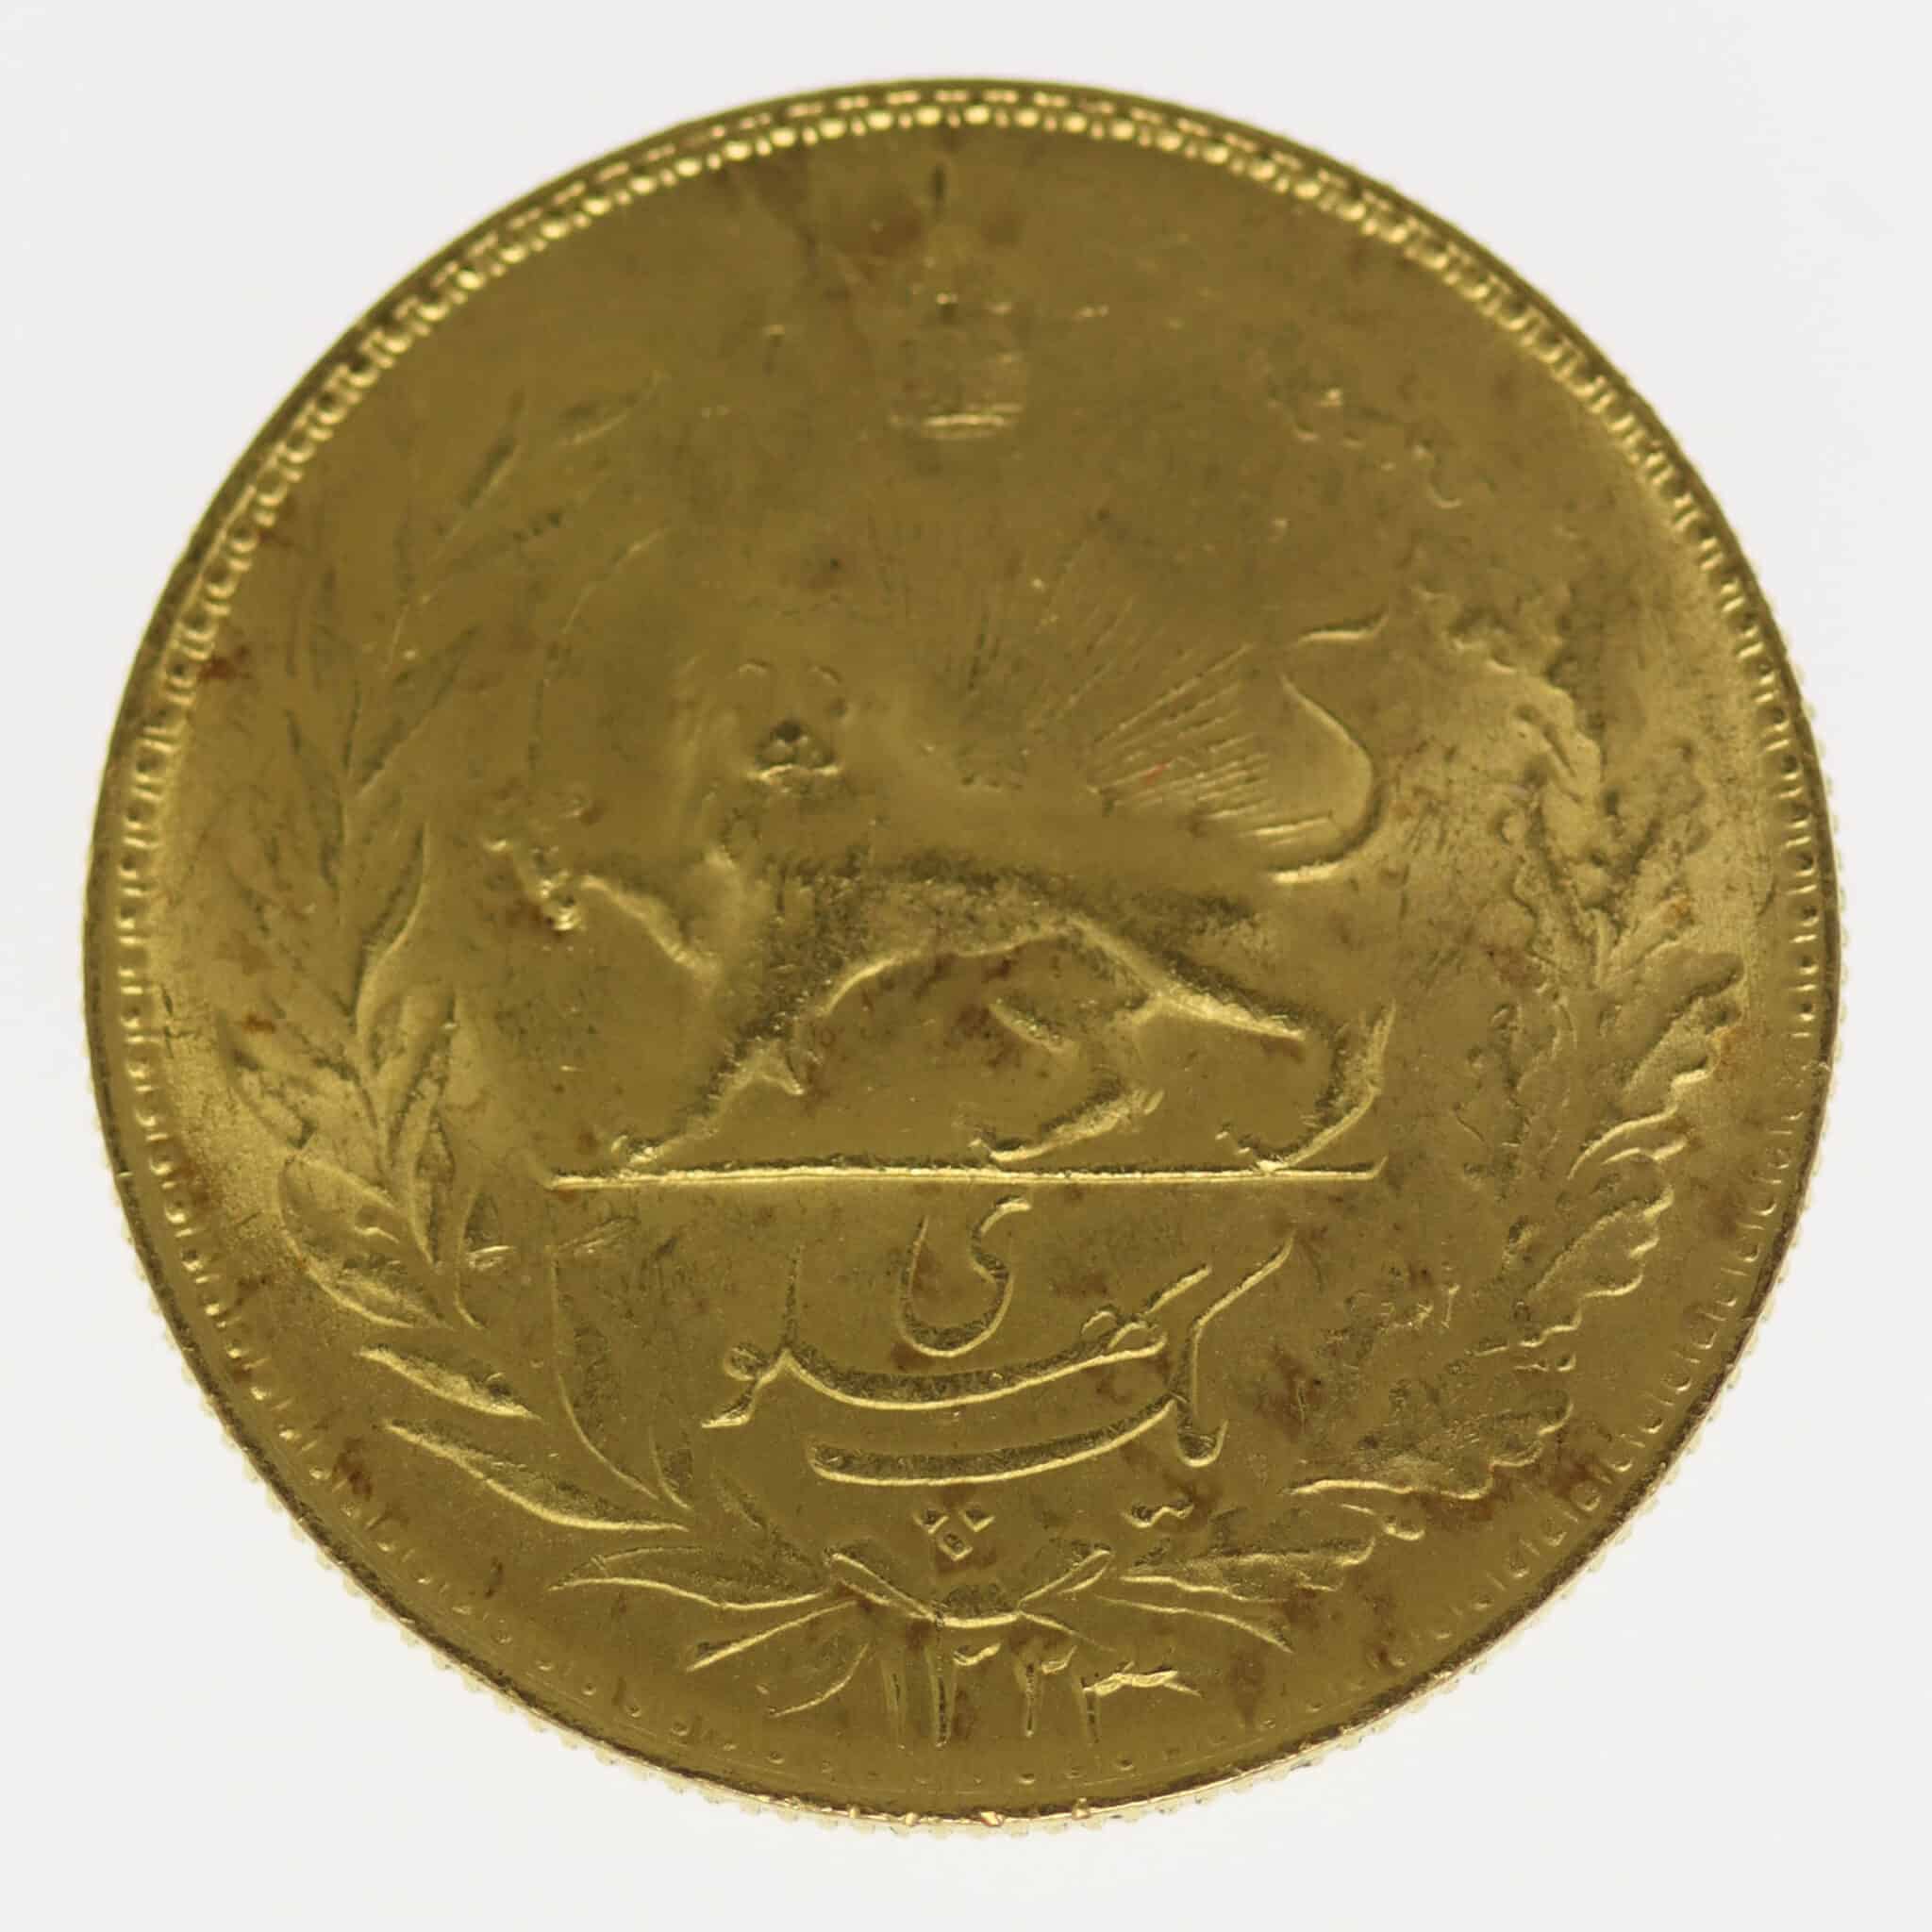 iran - Iran Mohammed Reza Shah 1 Pahlavi 1944